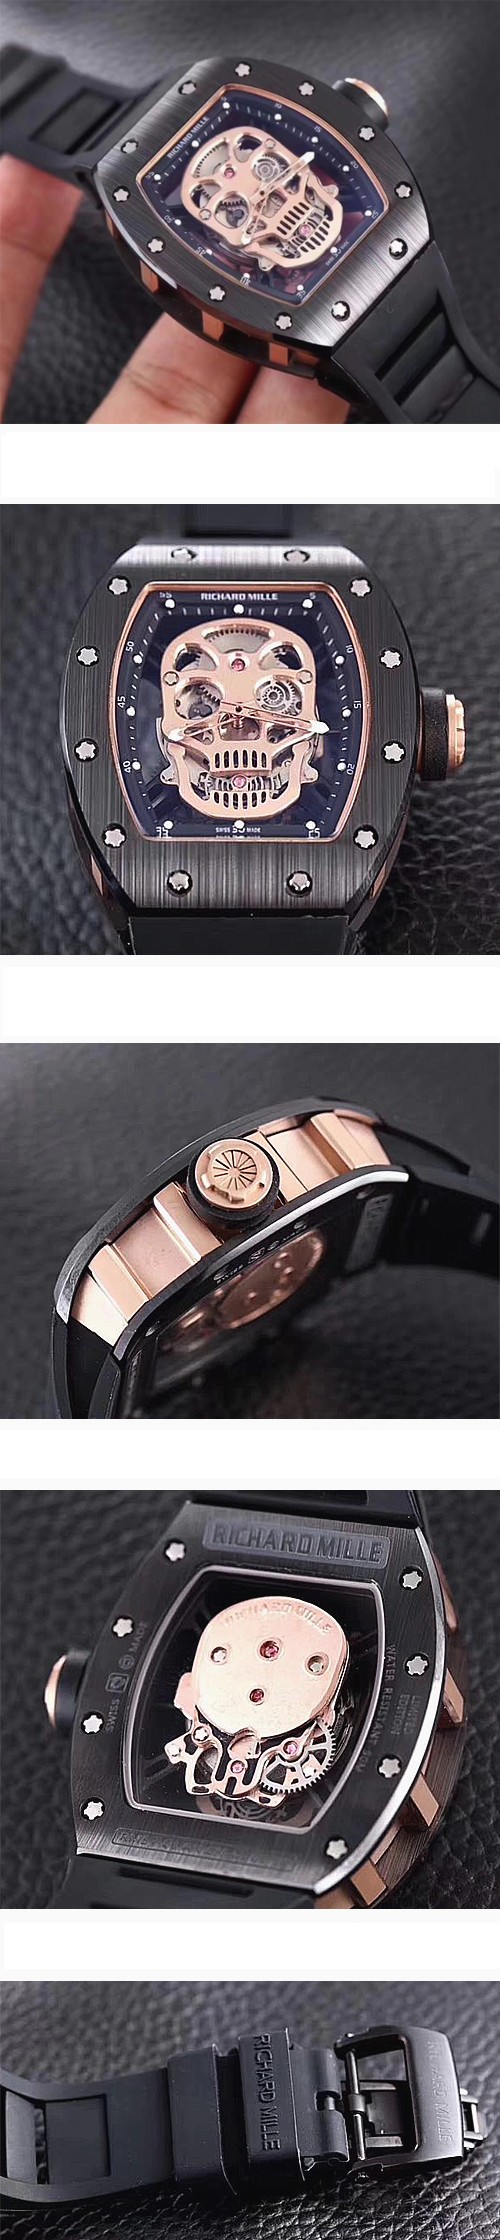 リシャール·ミル腕時計の説明